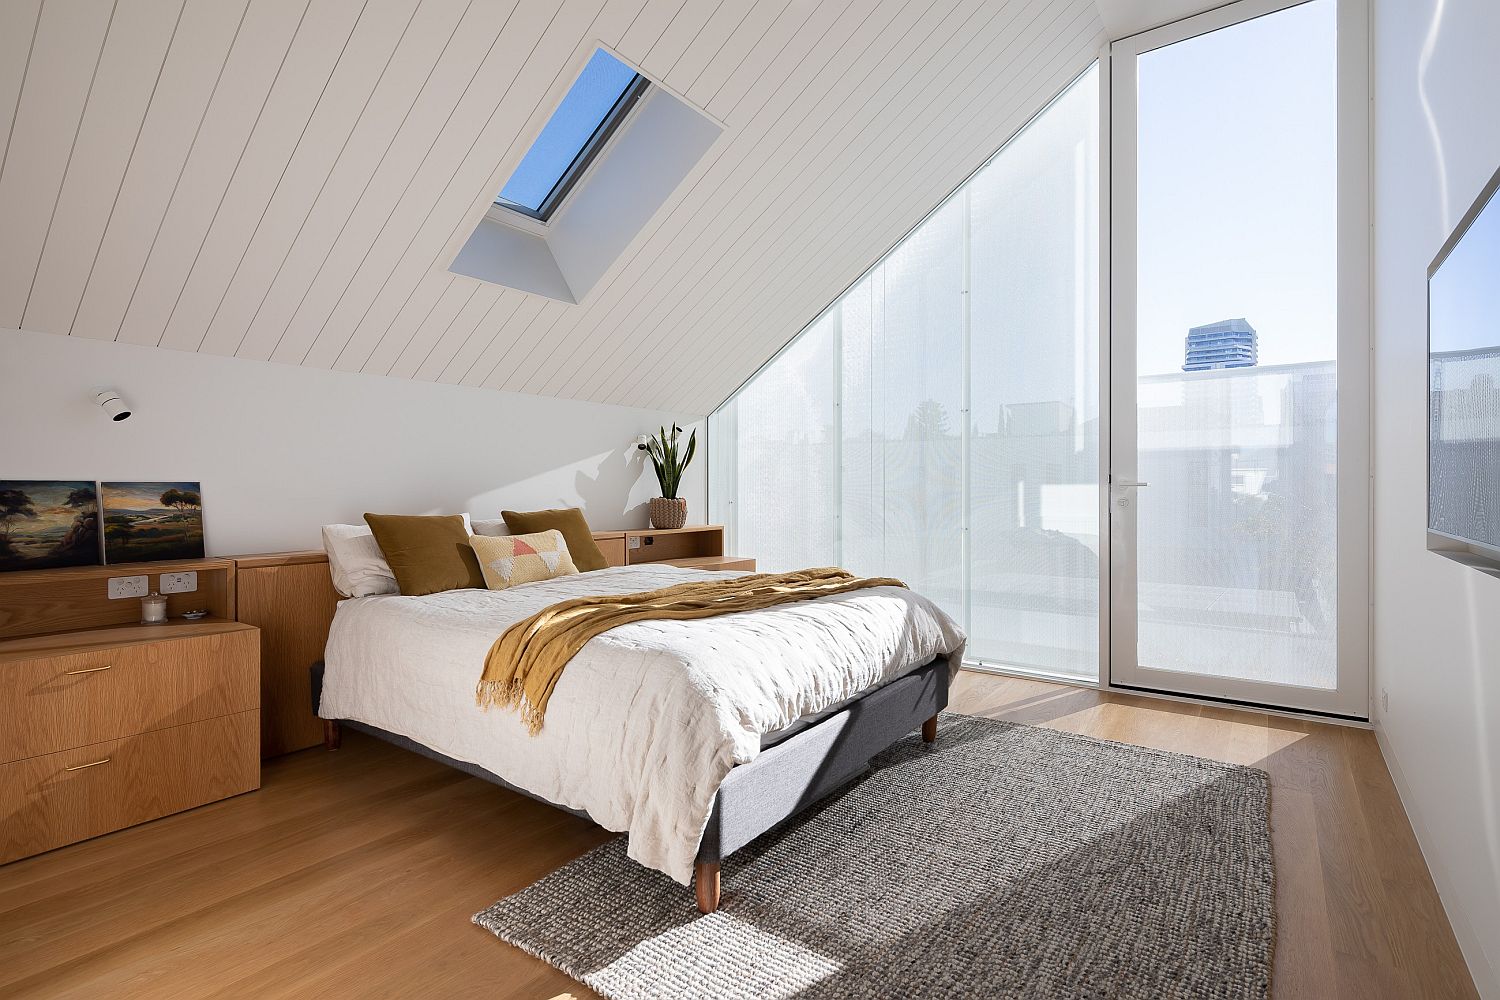 Hình ảnh phòng ngủ nhỏ trên tầng áp mái với tường và trần màu trắng tinh khôi, sàn nhà lát gỗ tạo cảm giác ấm áp, khung cửa sổ kính lớn đón sáng tự nhiên.